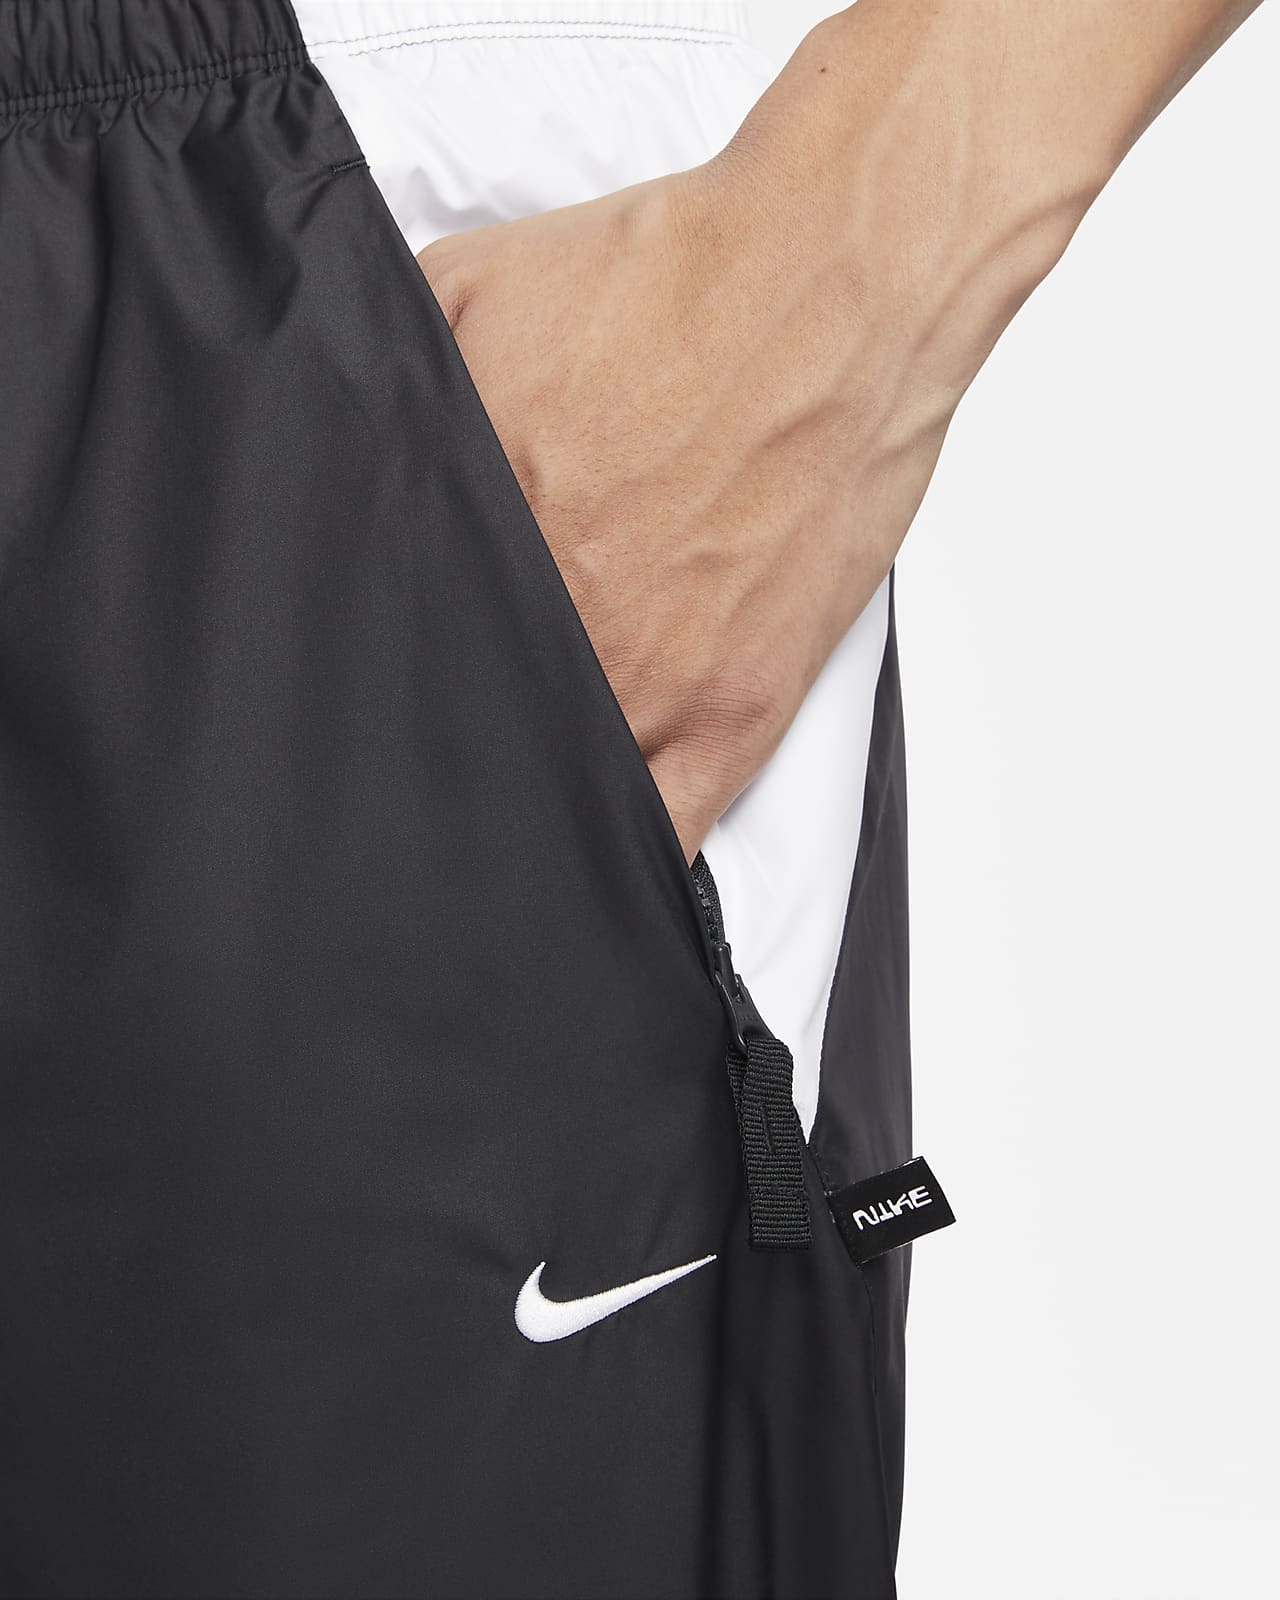 Nike Repel Men's Football Pants. Nike